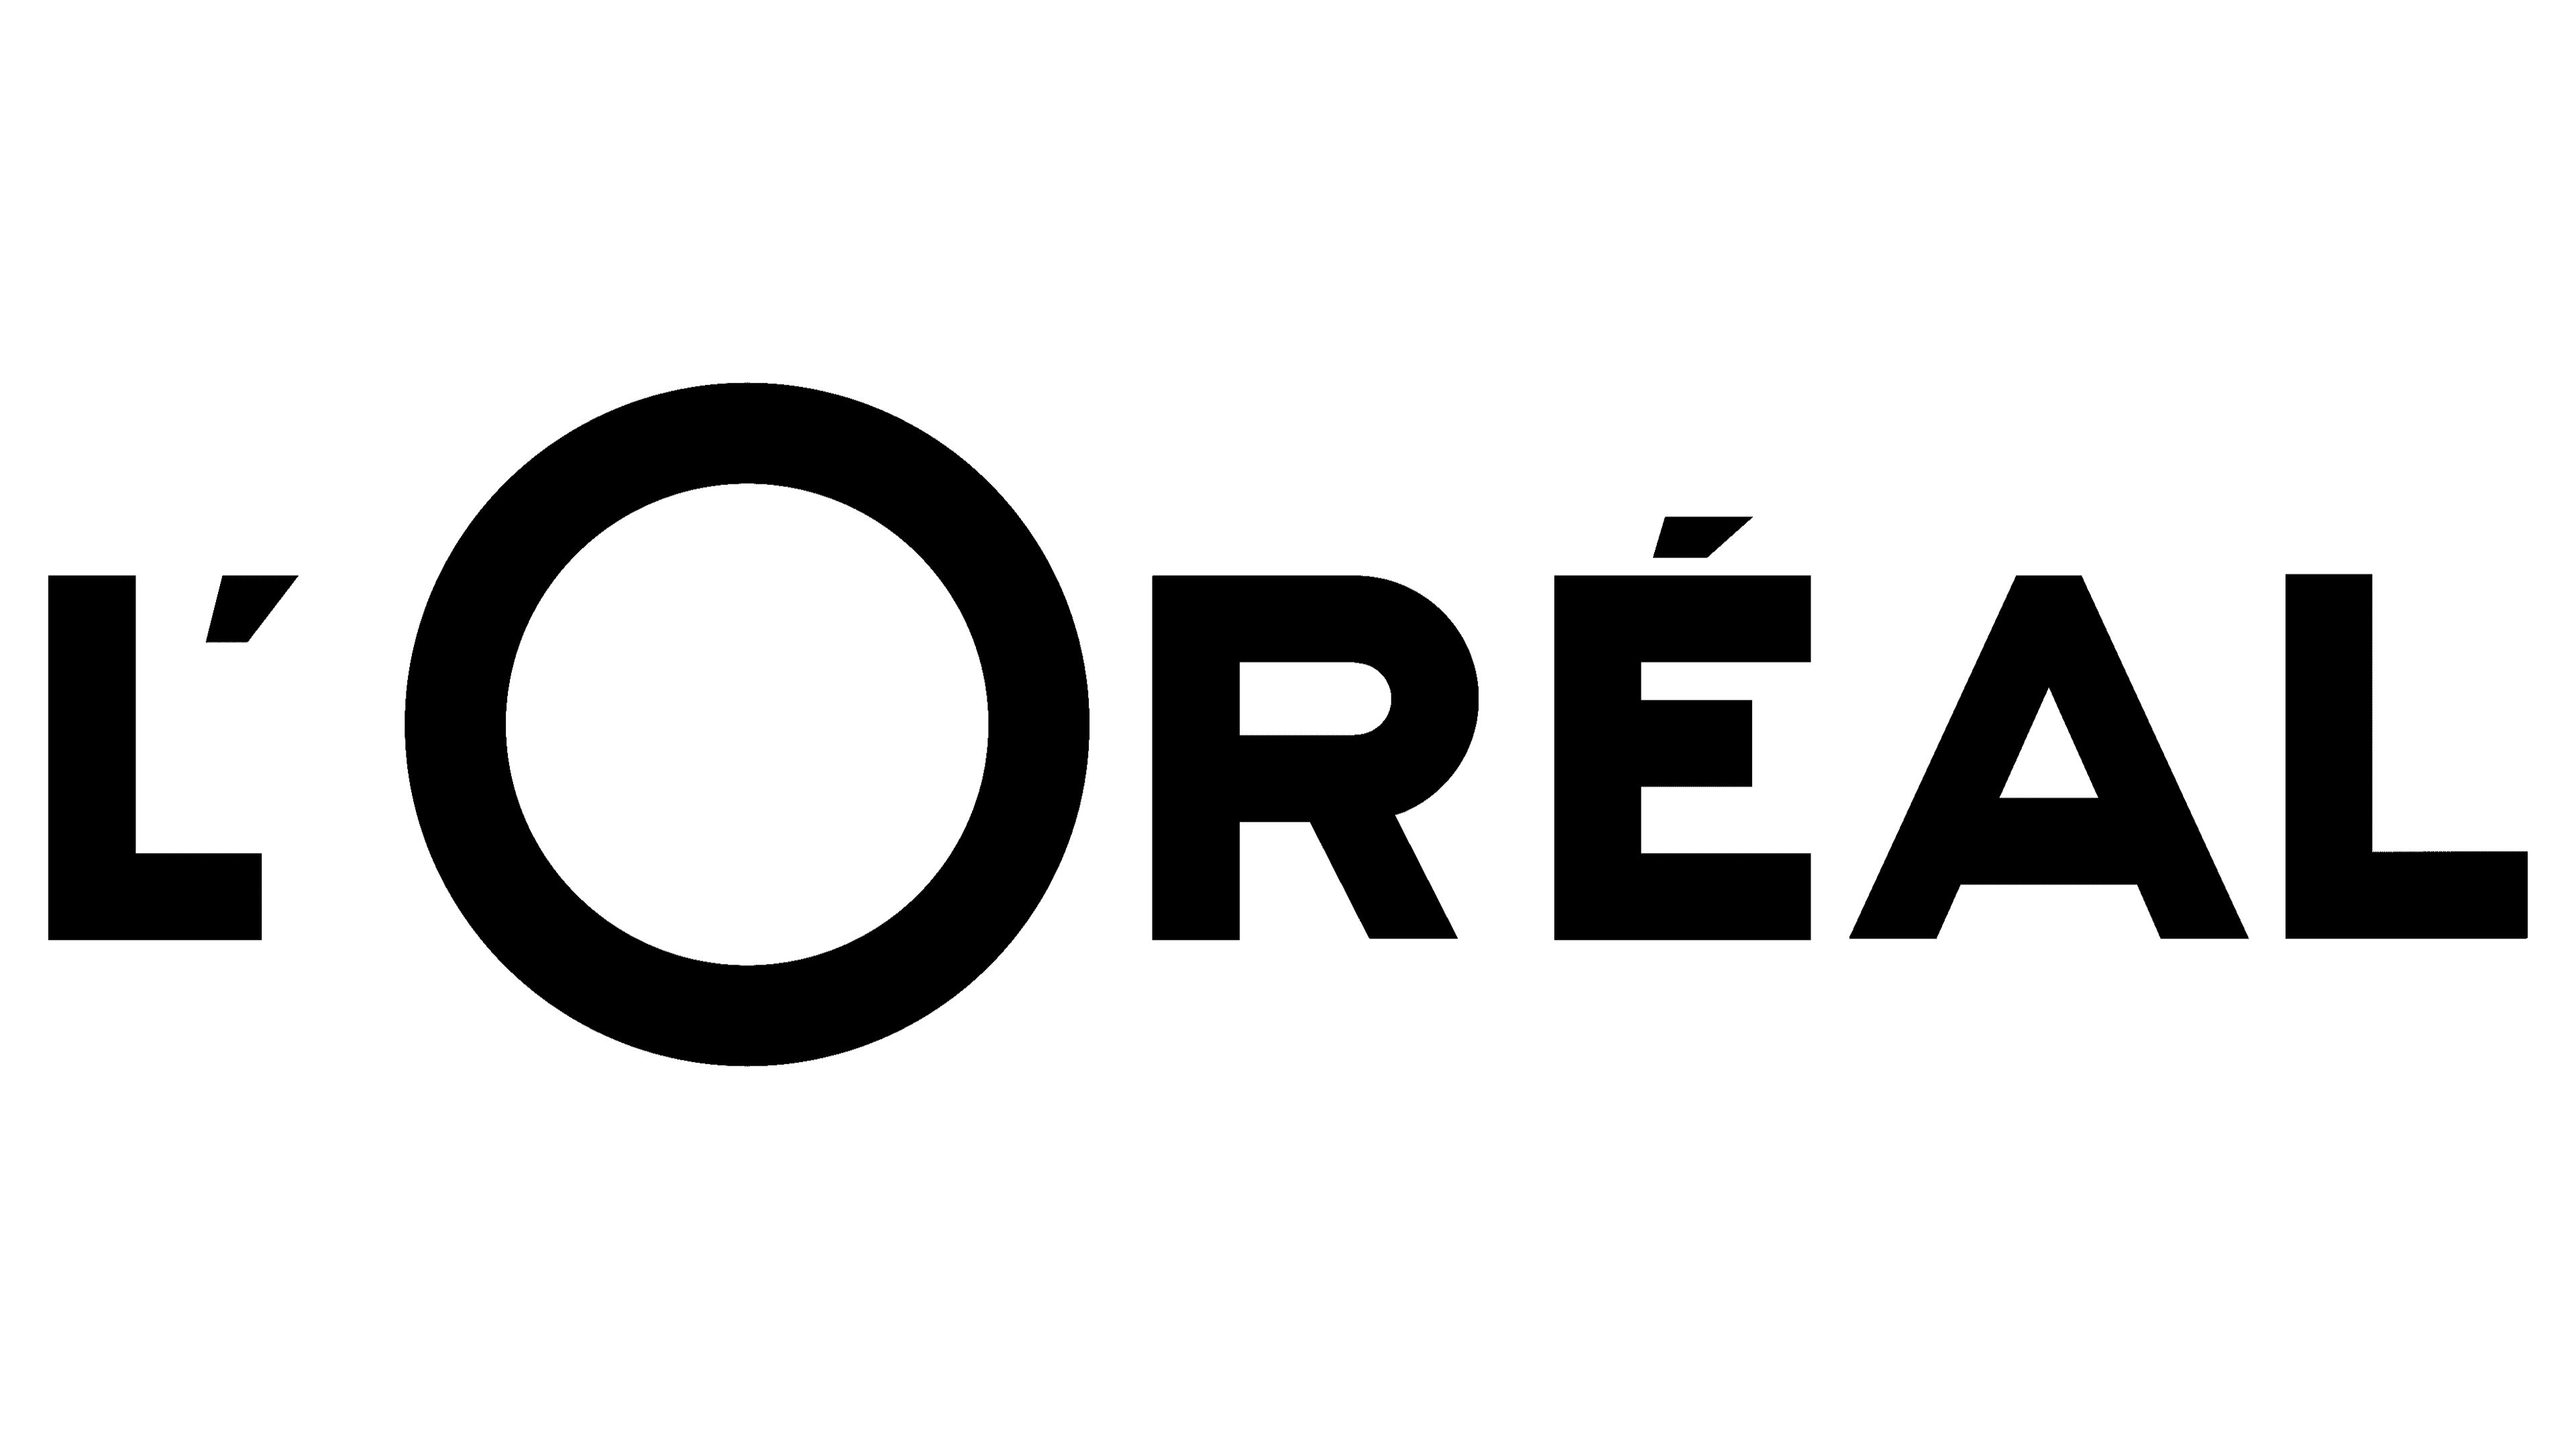 Le Défilé L'Oréal Paris Gratuit : Un Événement Mode à Ne Pas Manquer